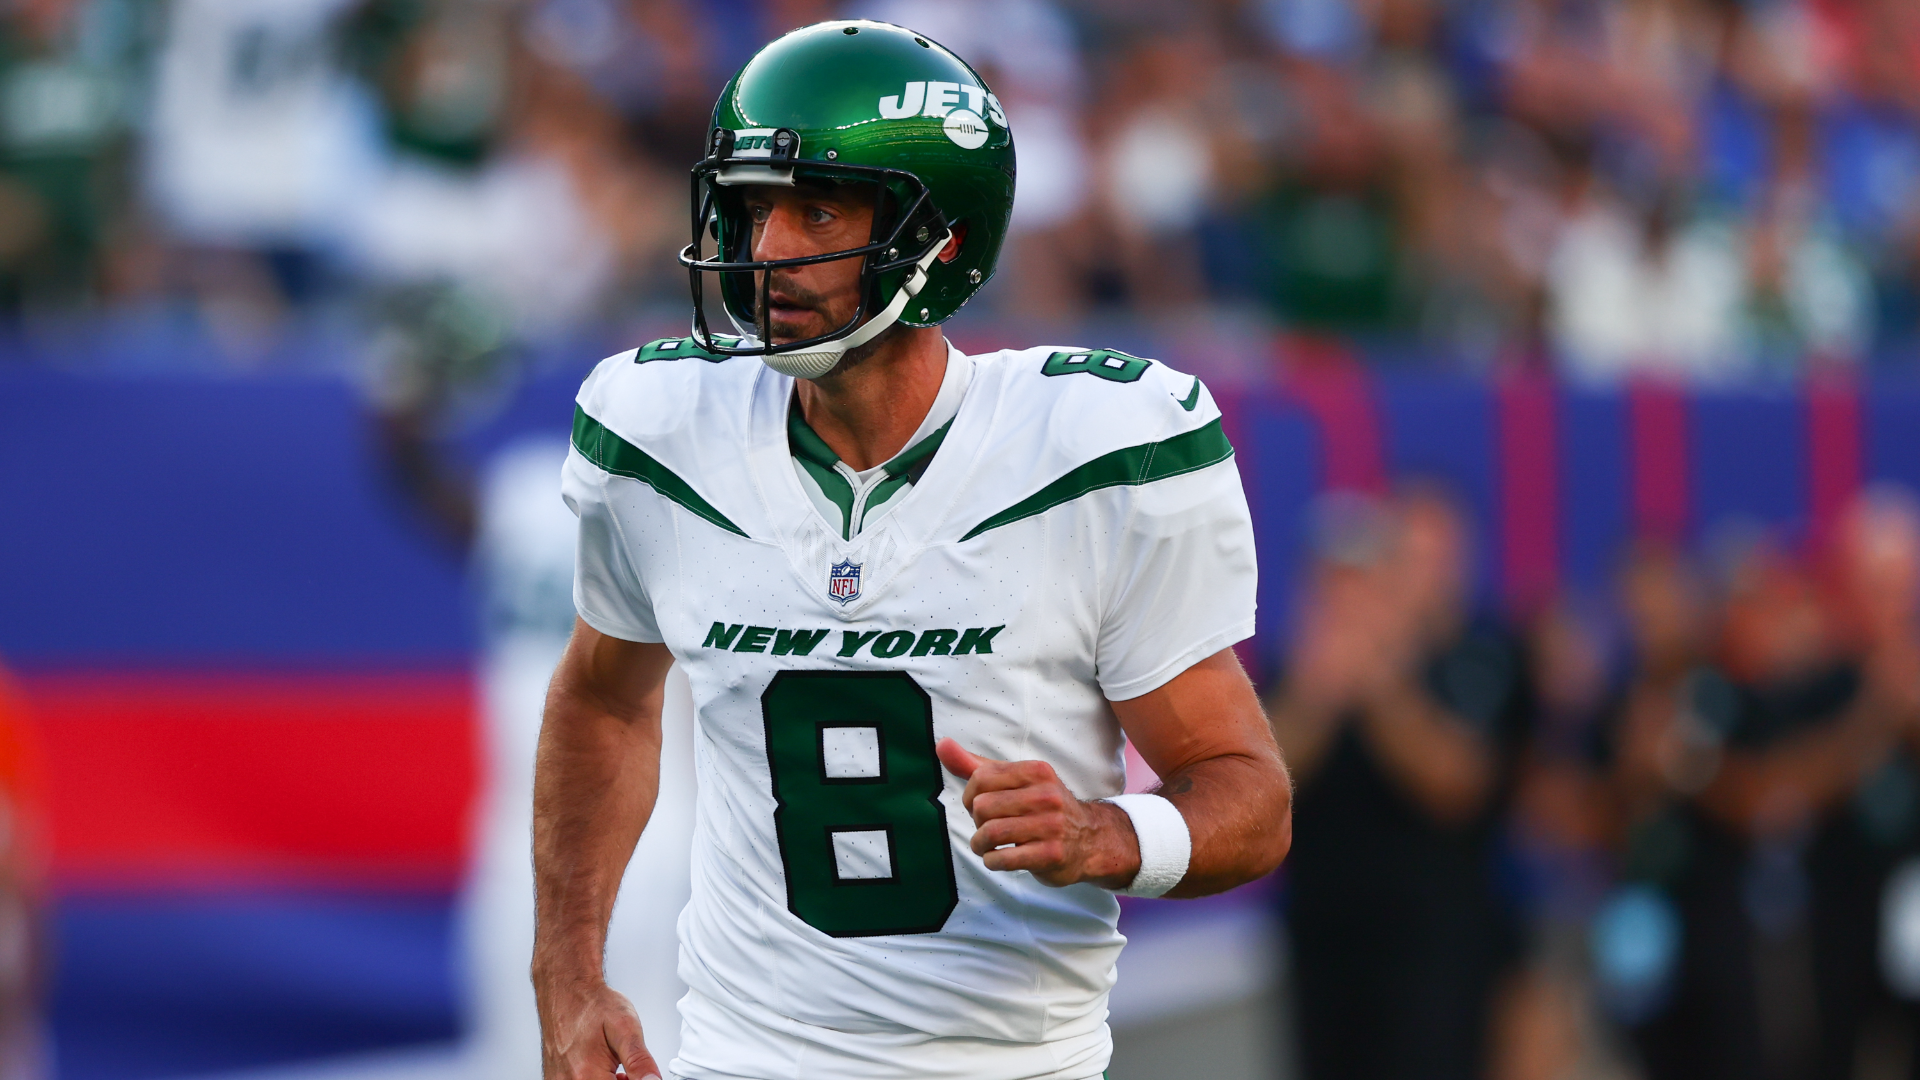 Bills Vs. Jets Live Stream: Watch Aaron Rodgers’ New York Debut
Online, On TV